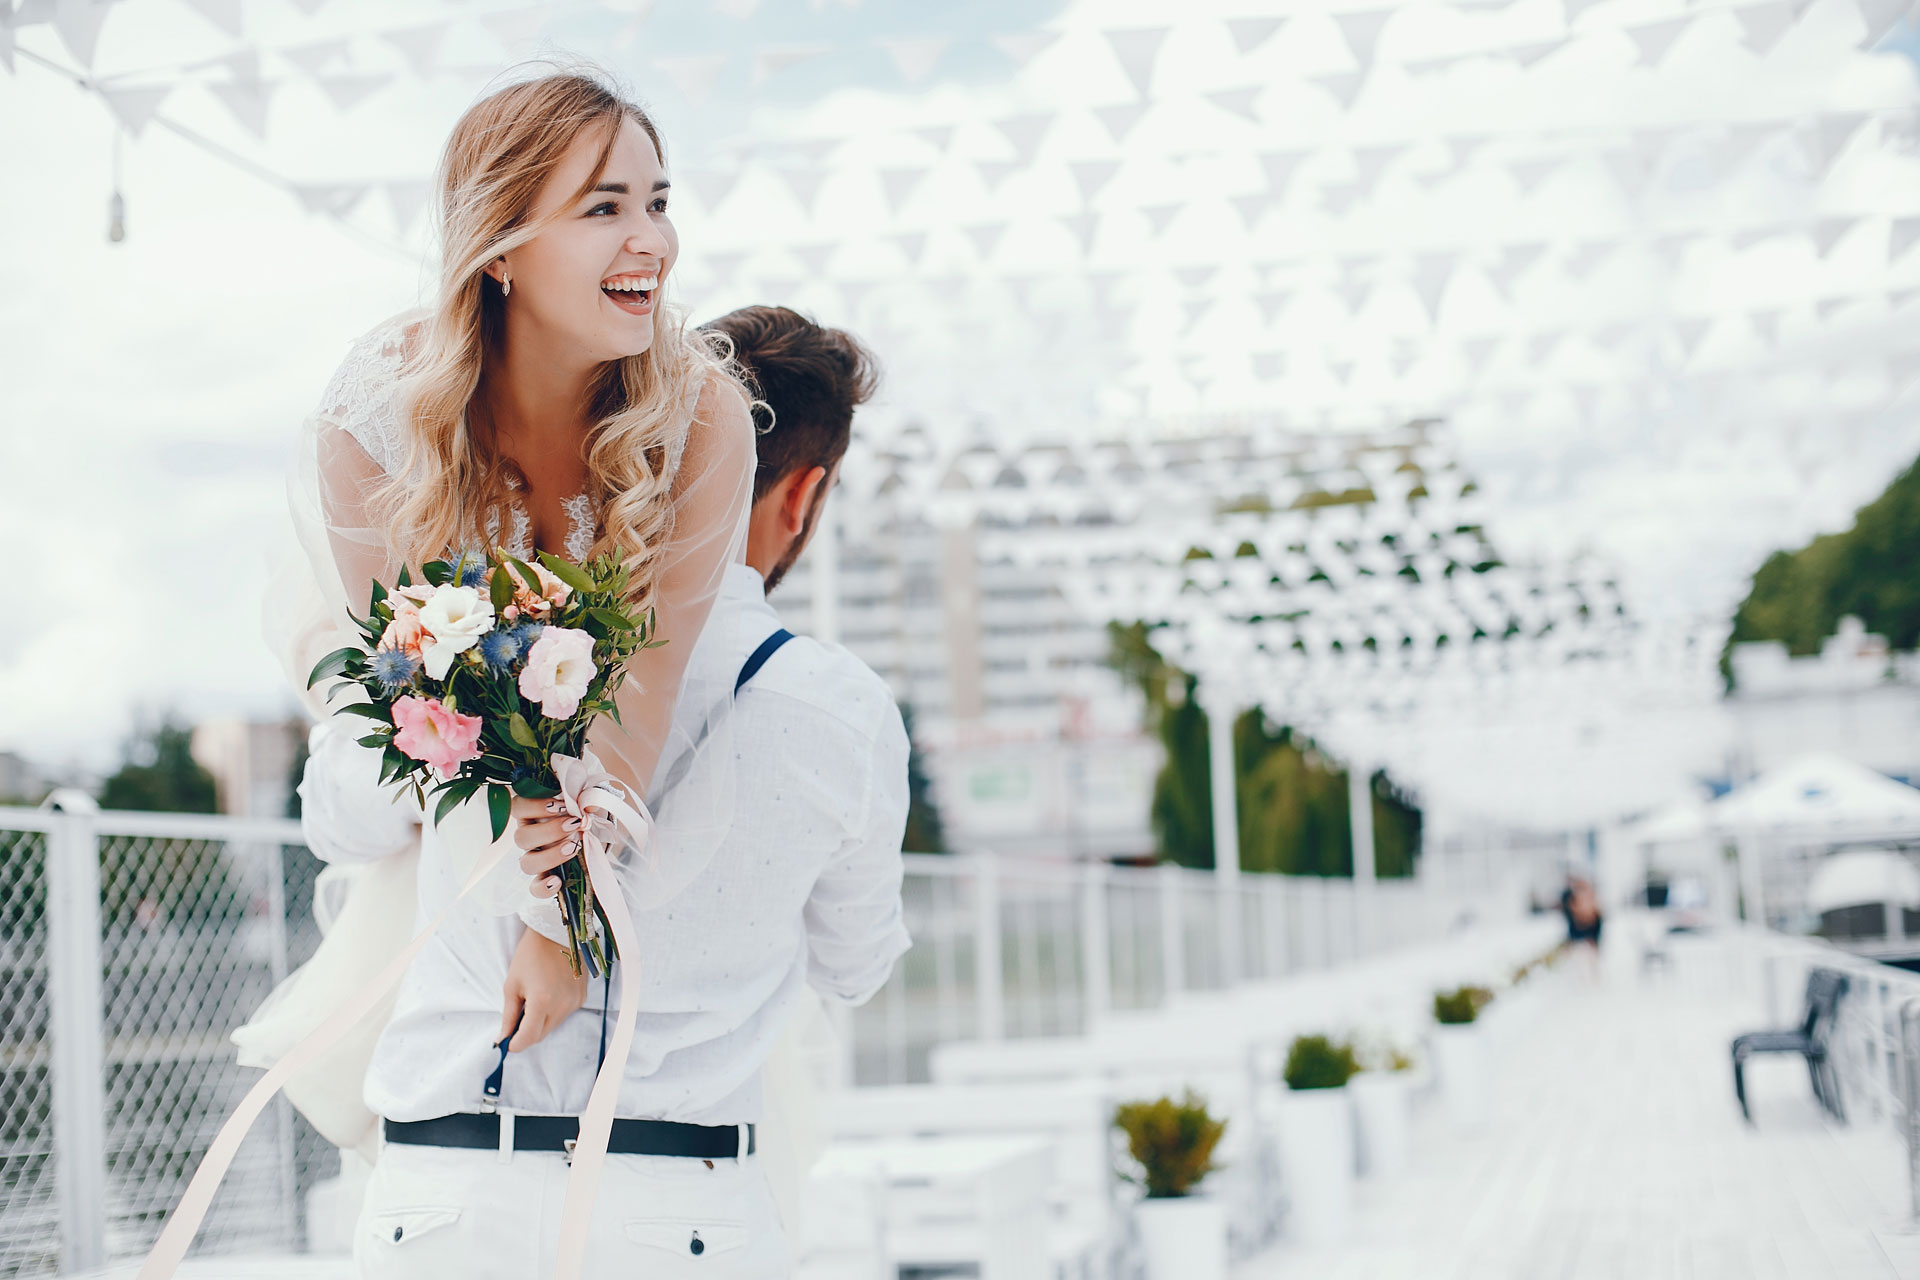 Sposarsi con Stile: Idee Uniche per un Matrimonio Indimenticabile